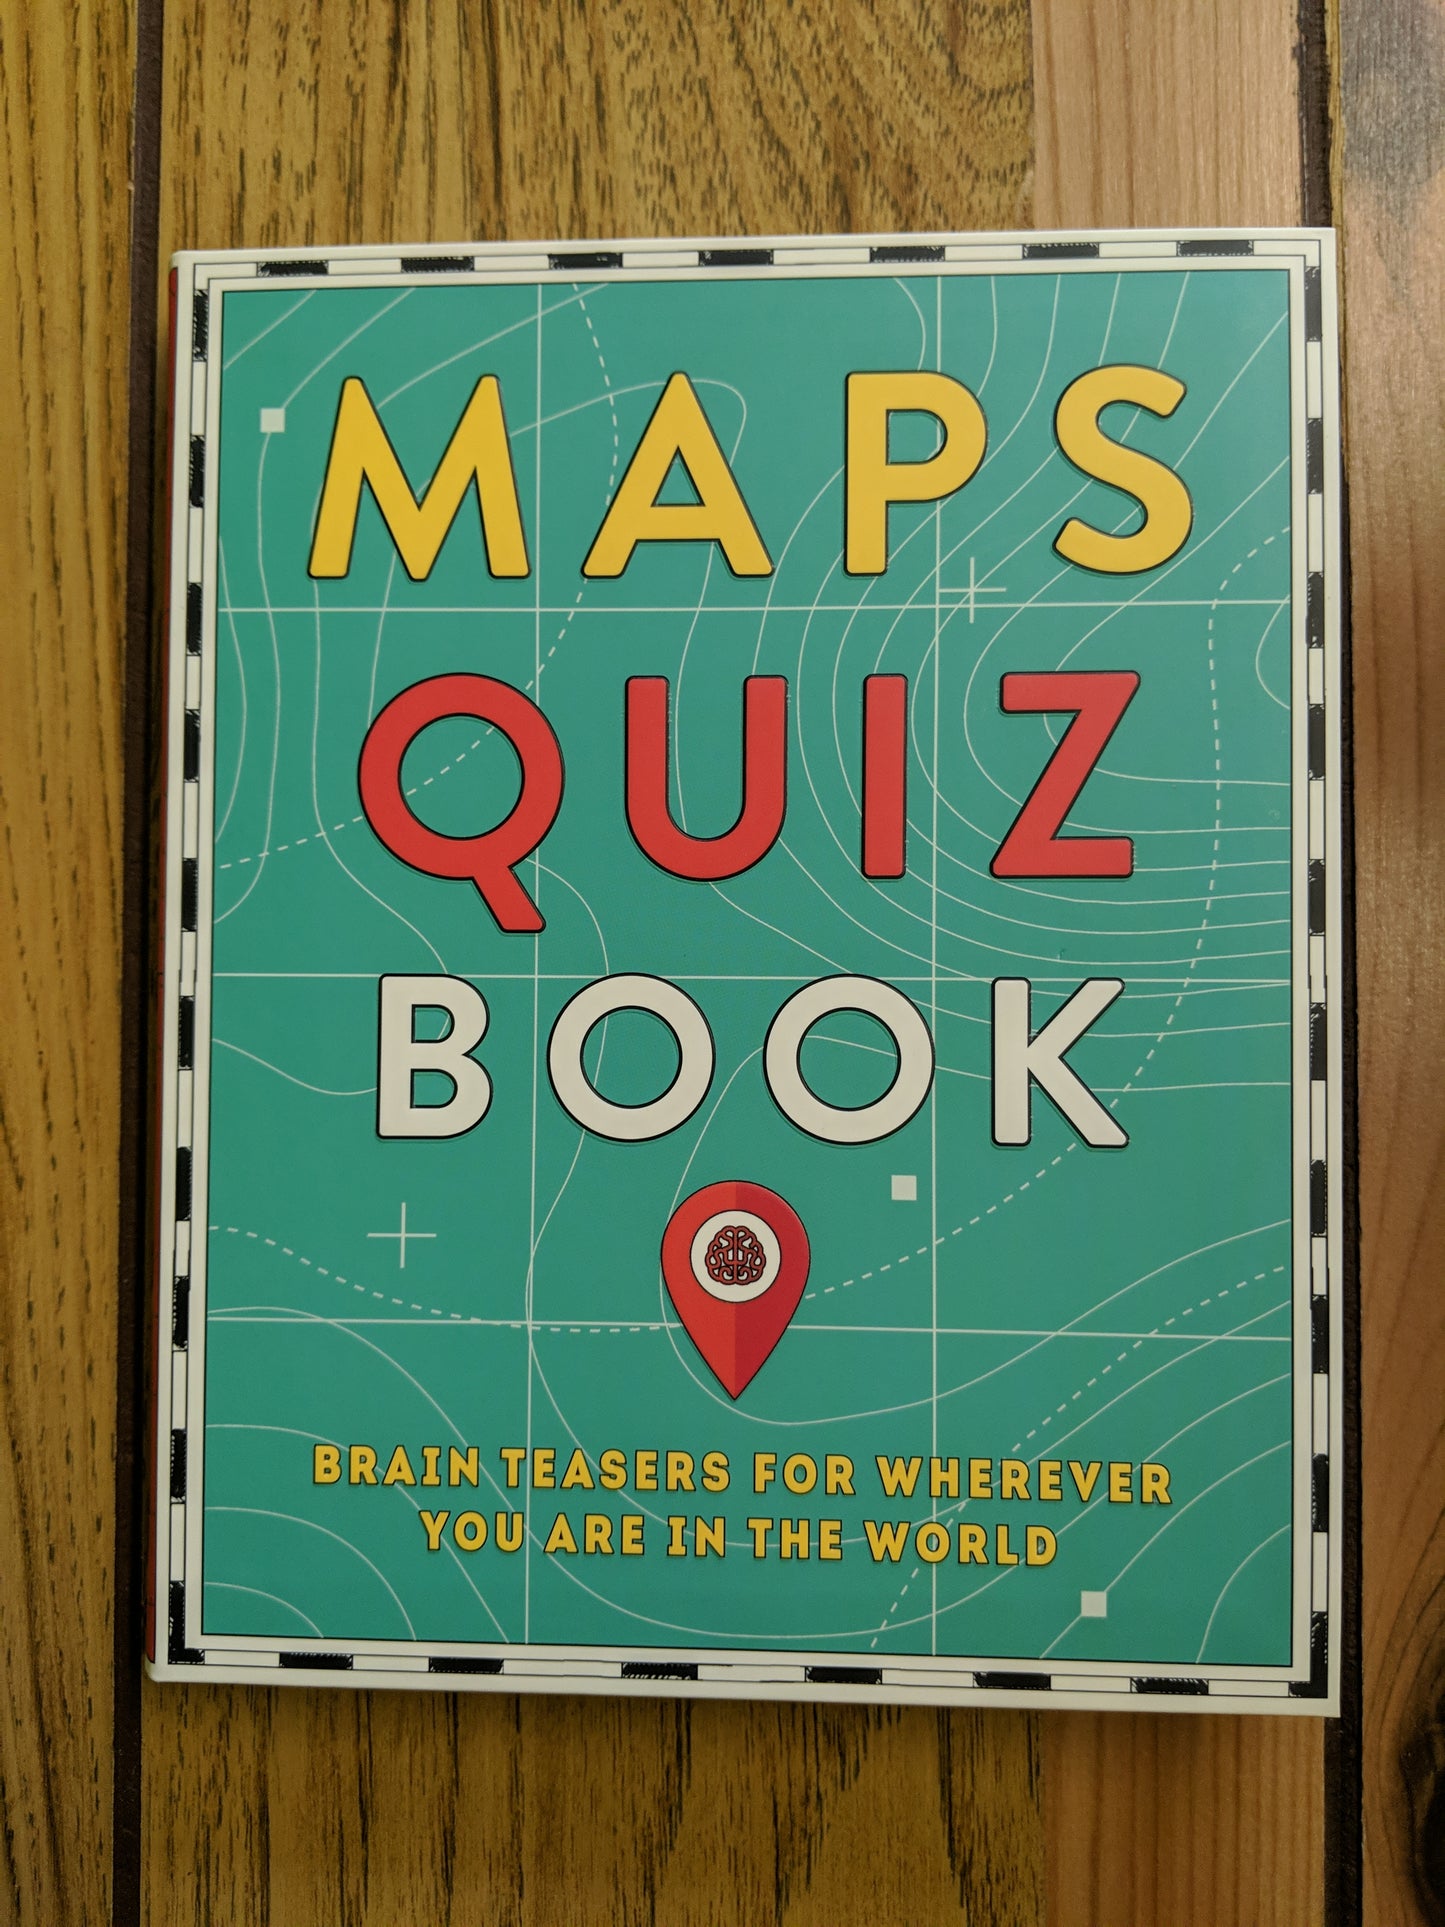 Maps Quiz Book